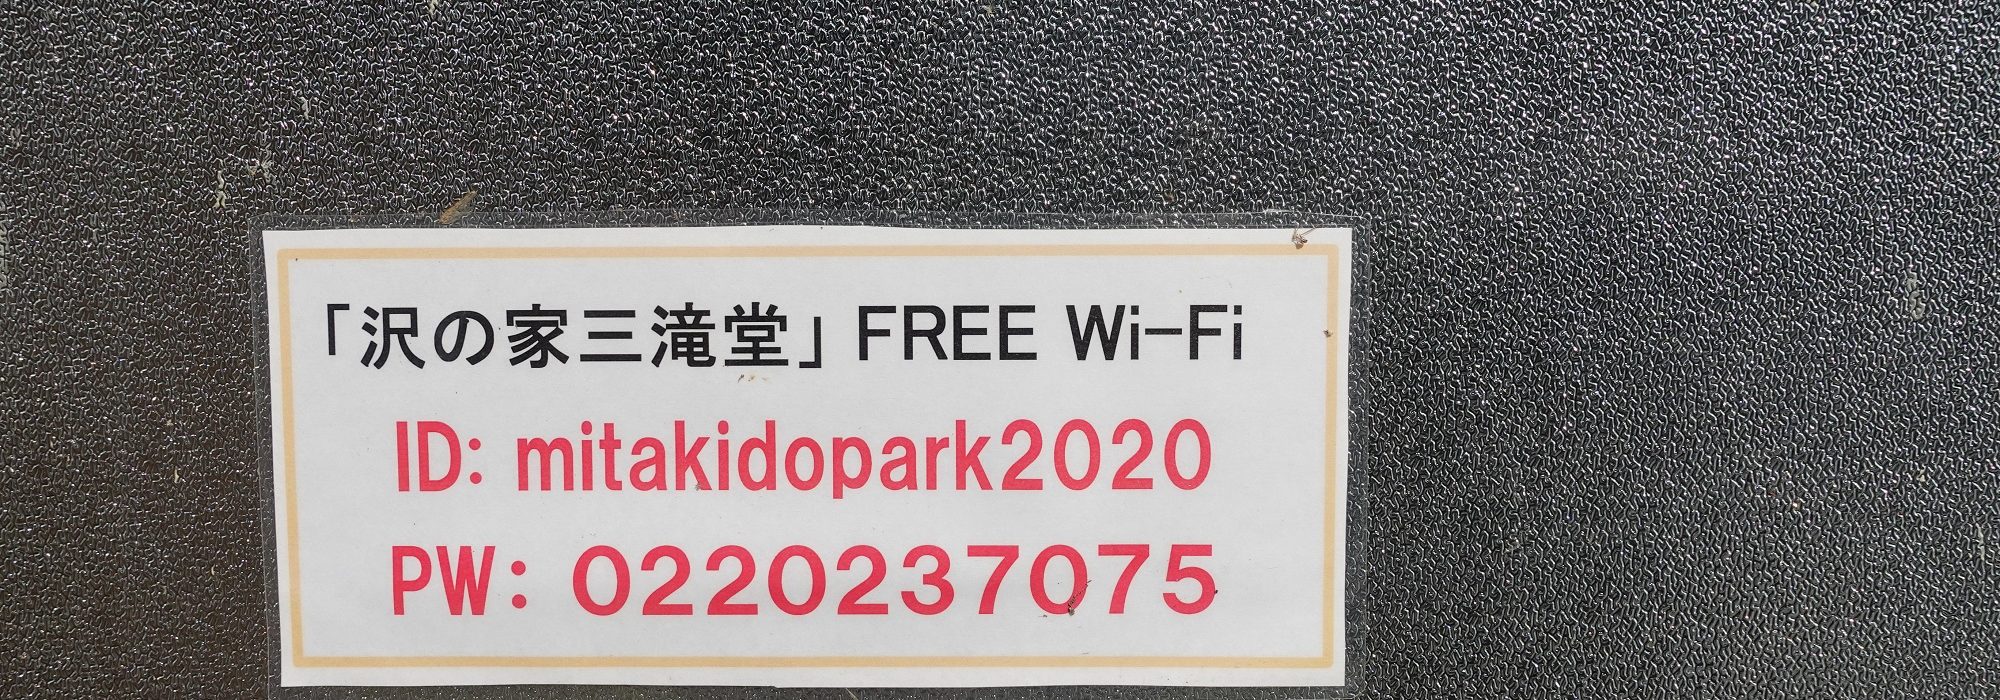 Wi-Fiもあるのは嬉しい